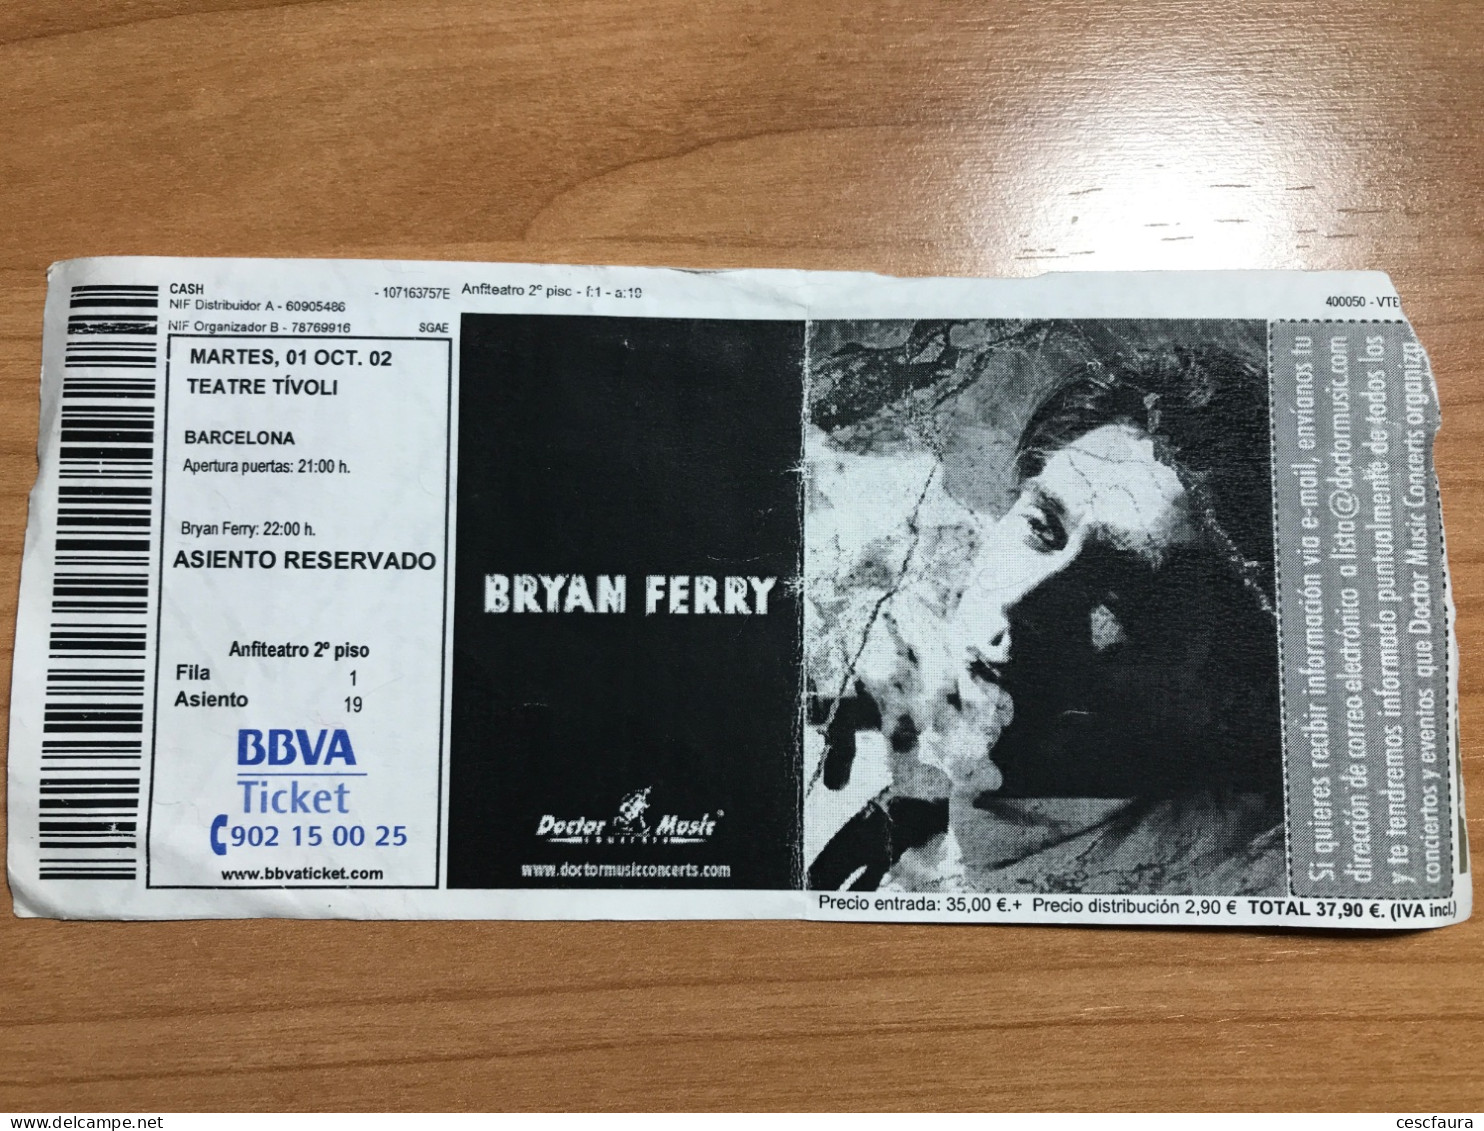 Bryan Ferry Concert Ticket Barcelona 01/10/2002 Teatre Tívoli Entrada - Biglietti Per Concerti